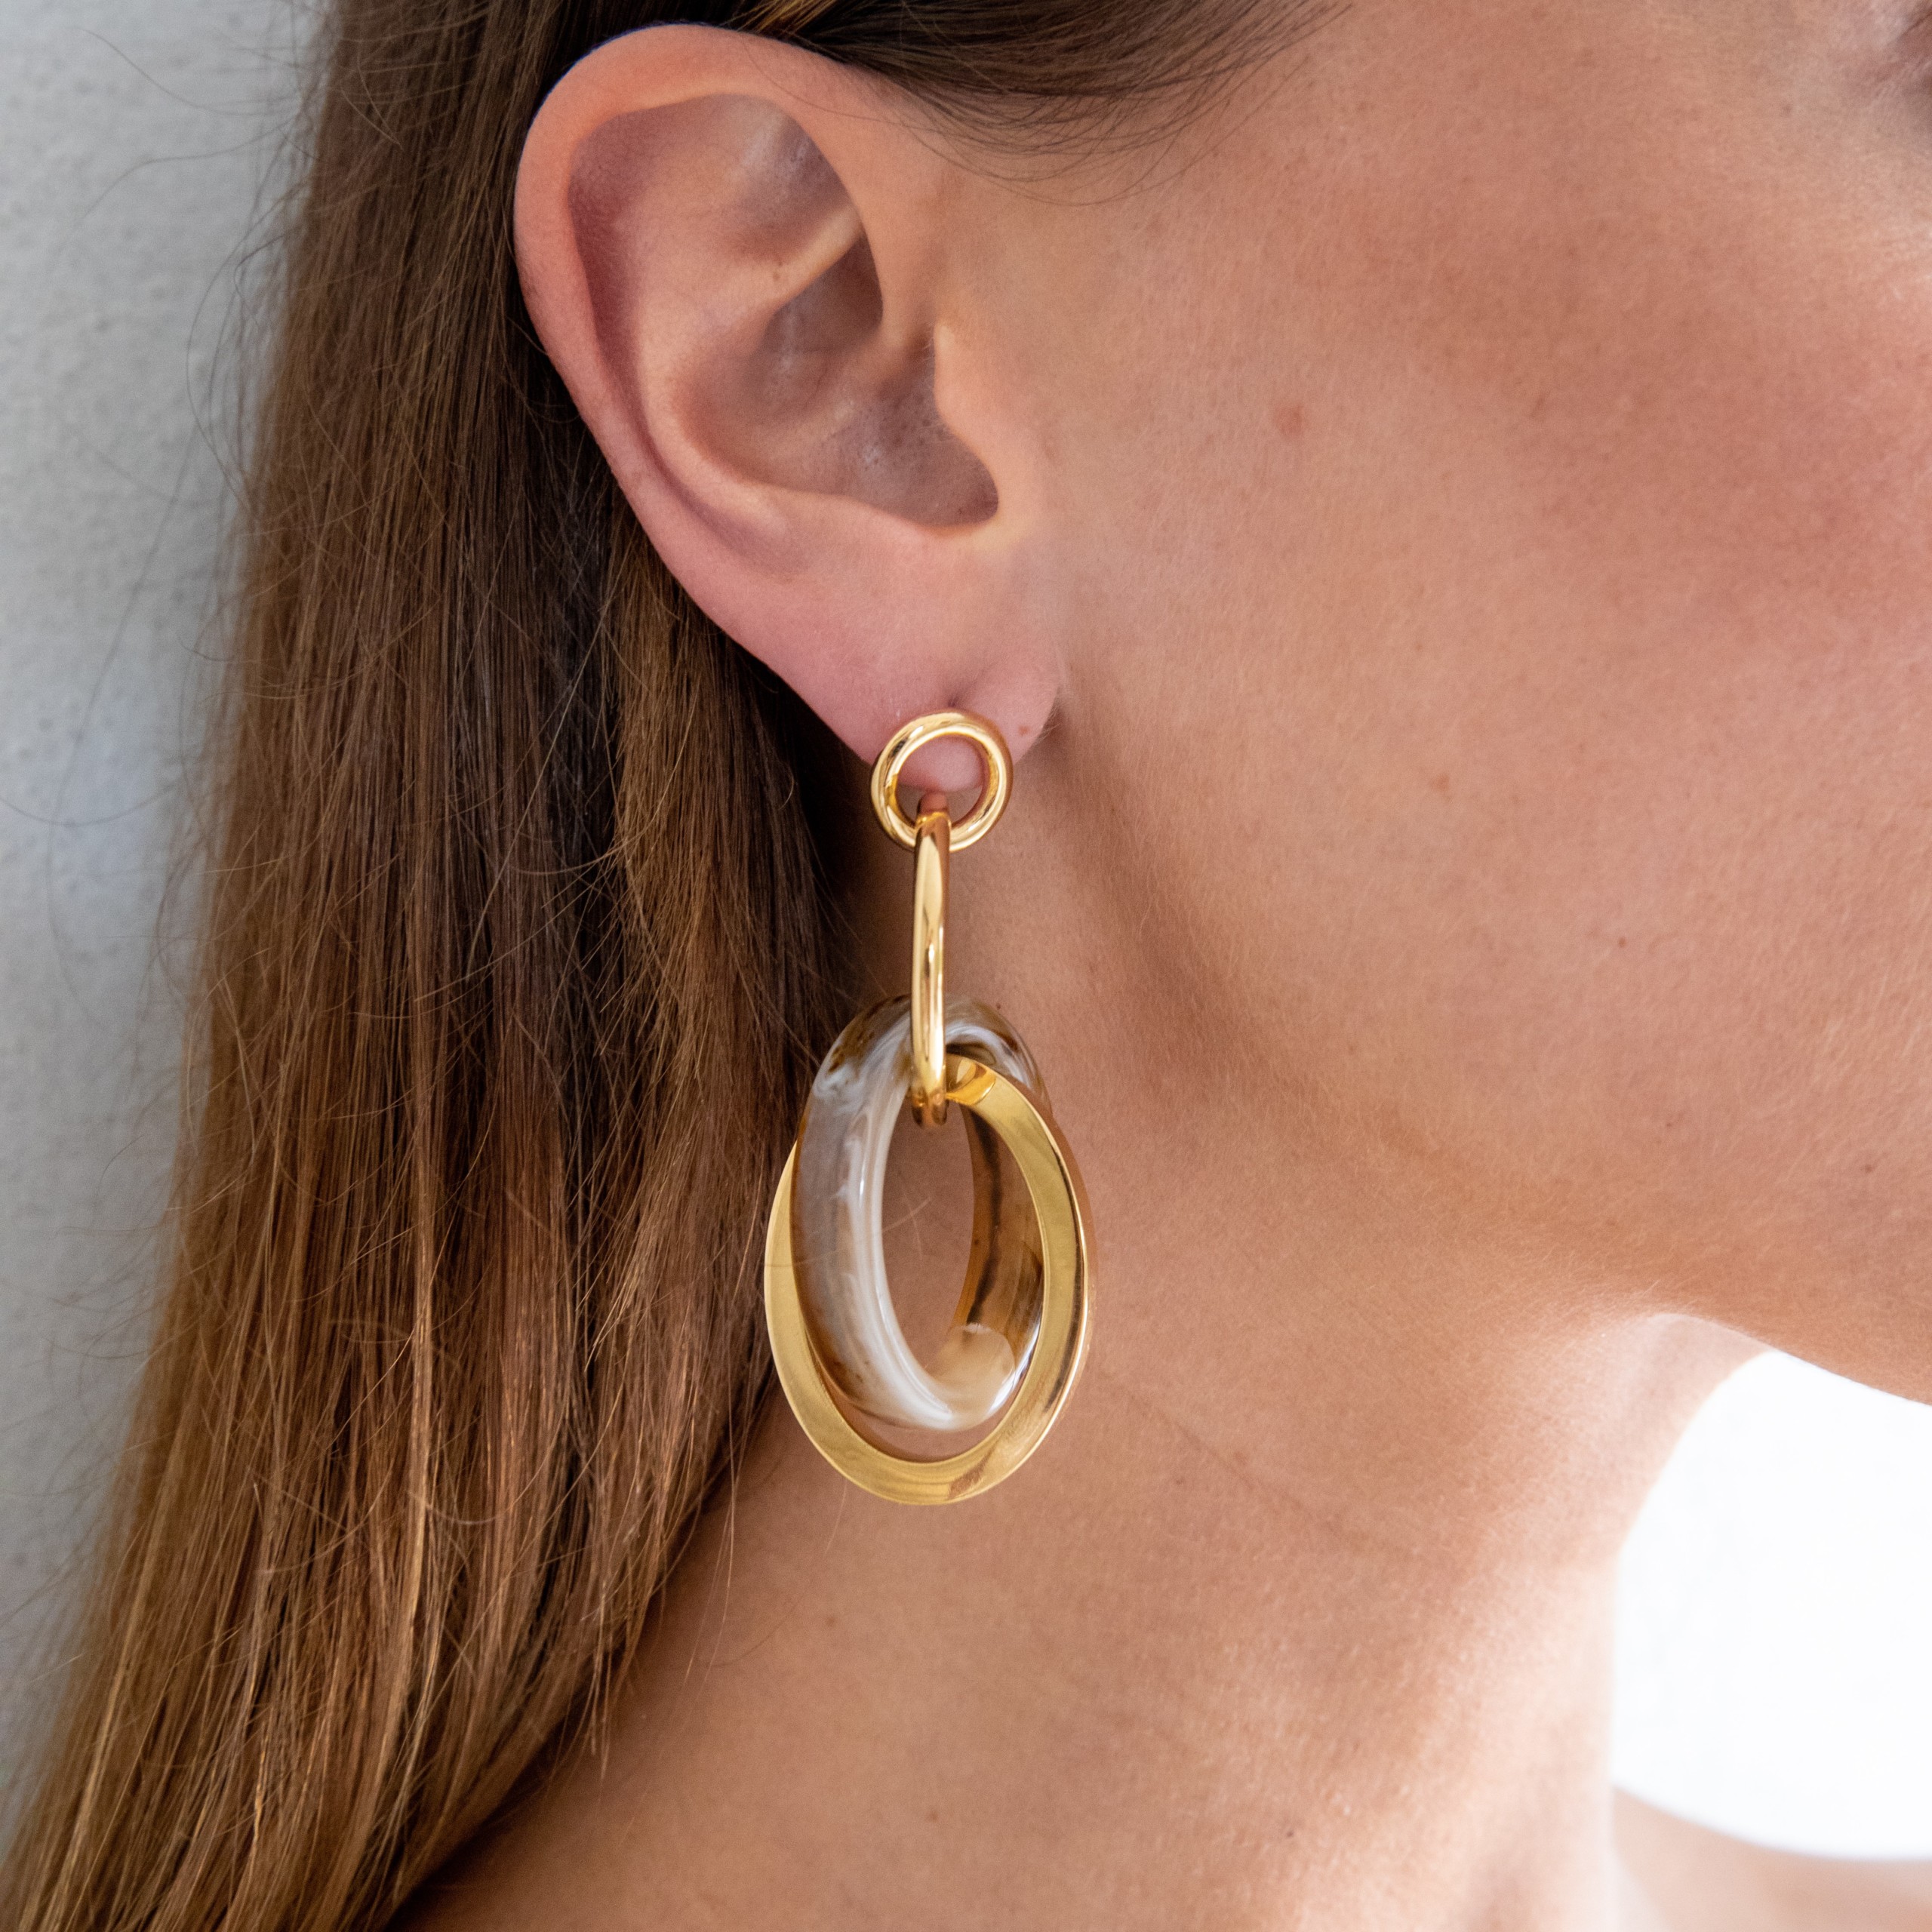 Allegra light brown gold earrings